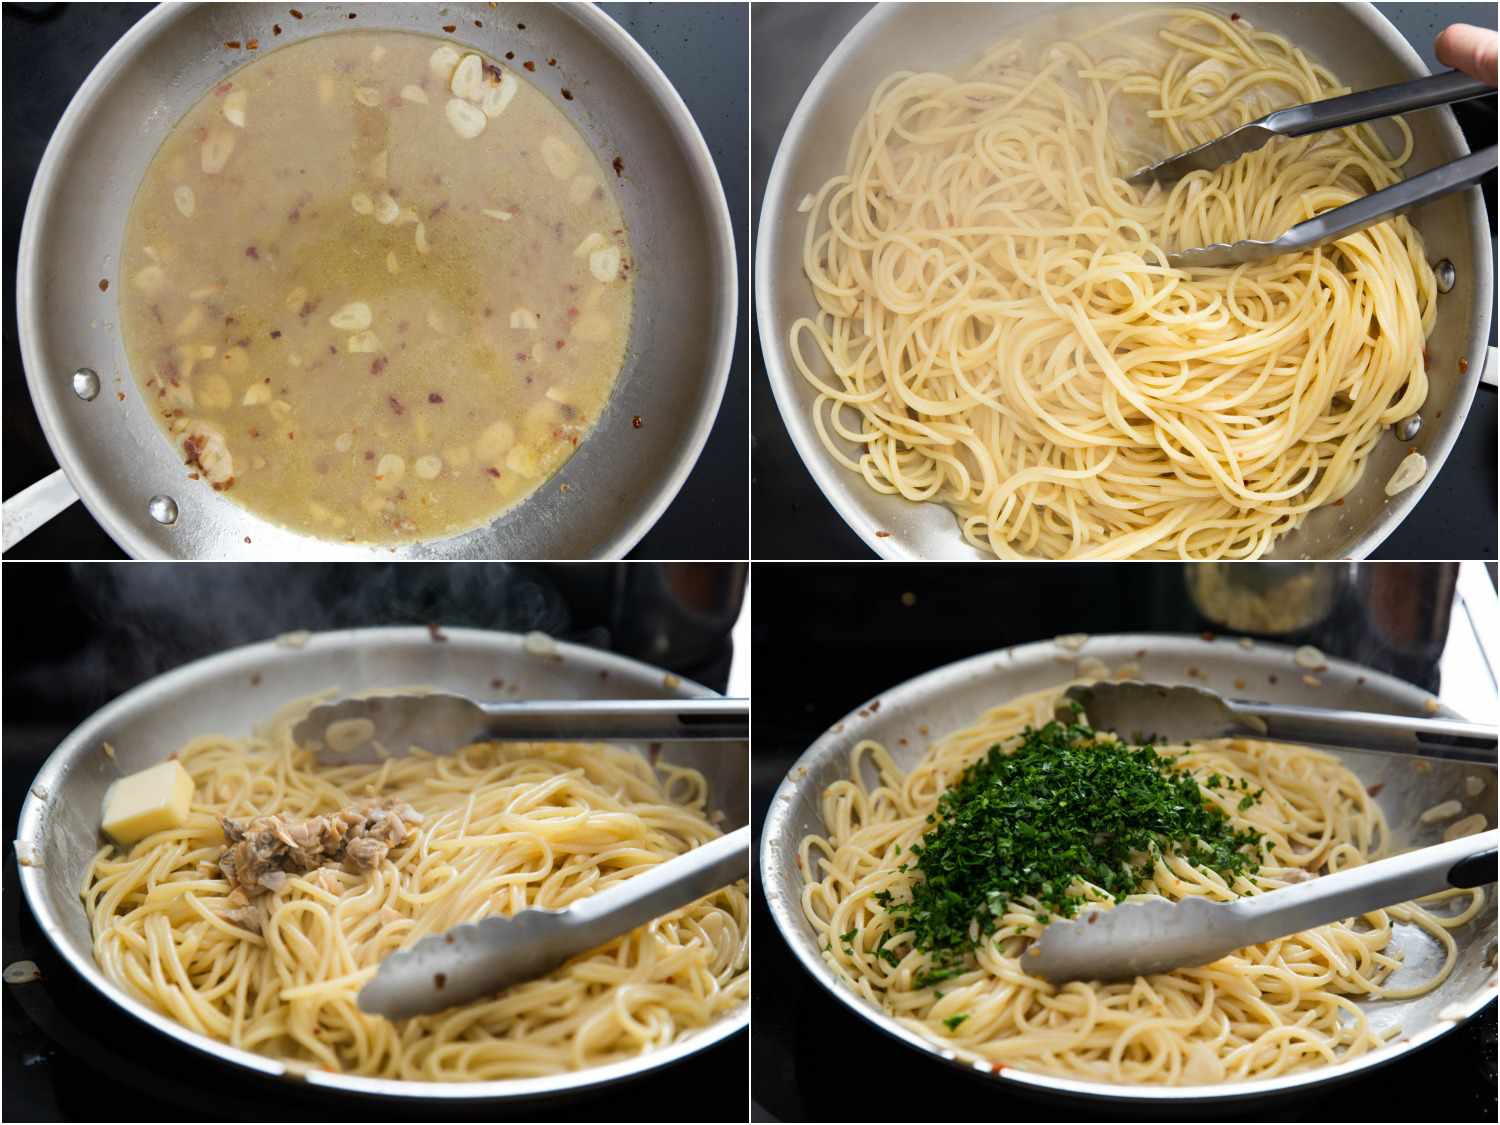 拼贴的意大利面被添加到锅充满黄油和大蒜gydF4y2Ba